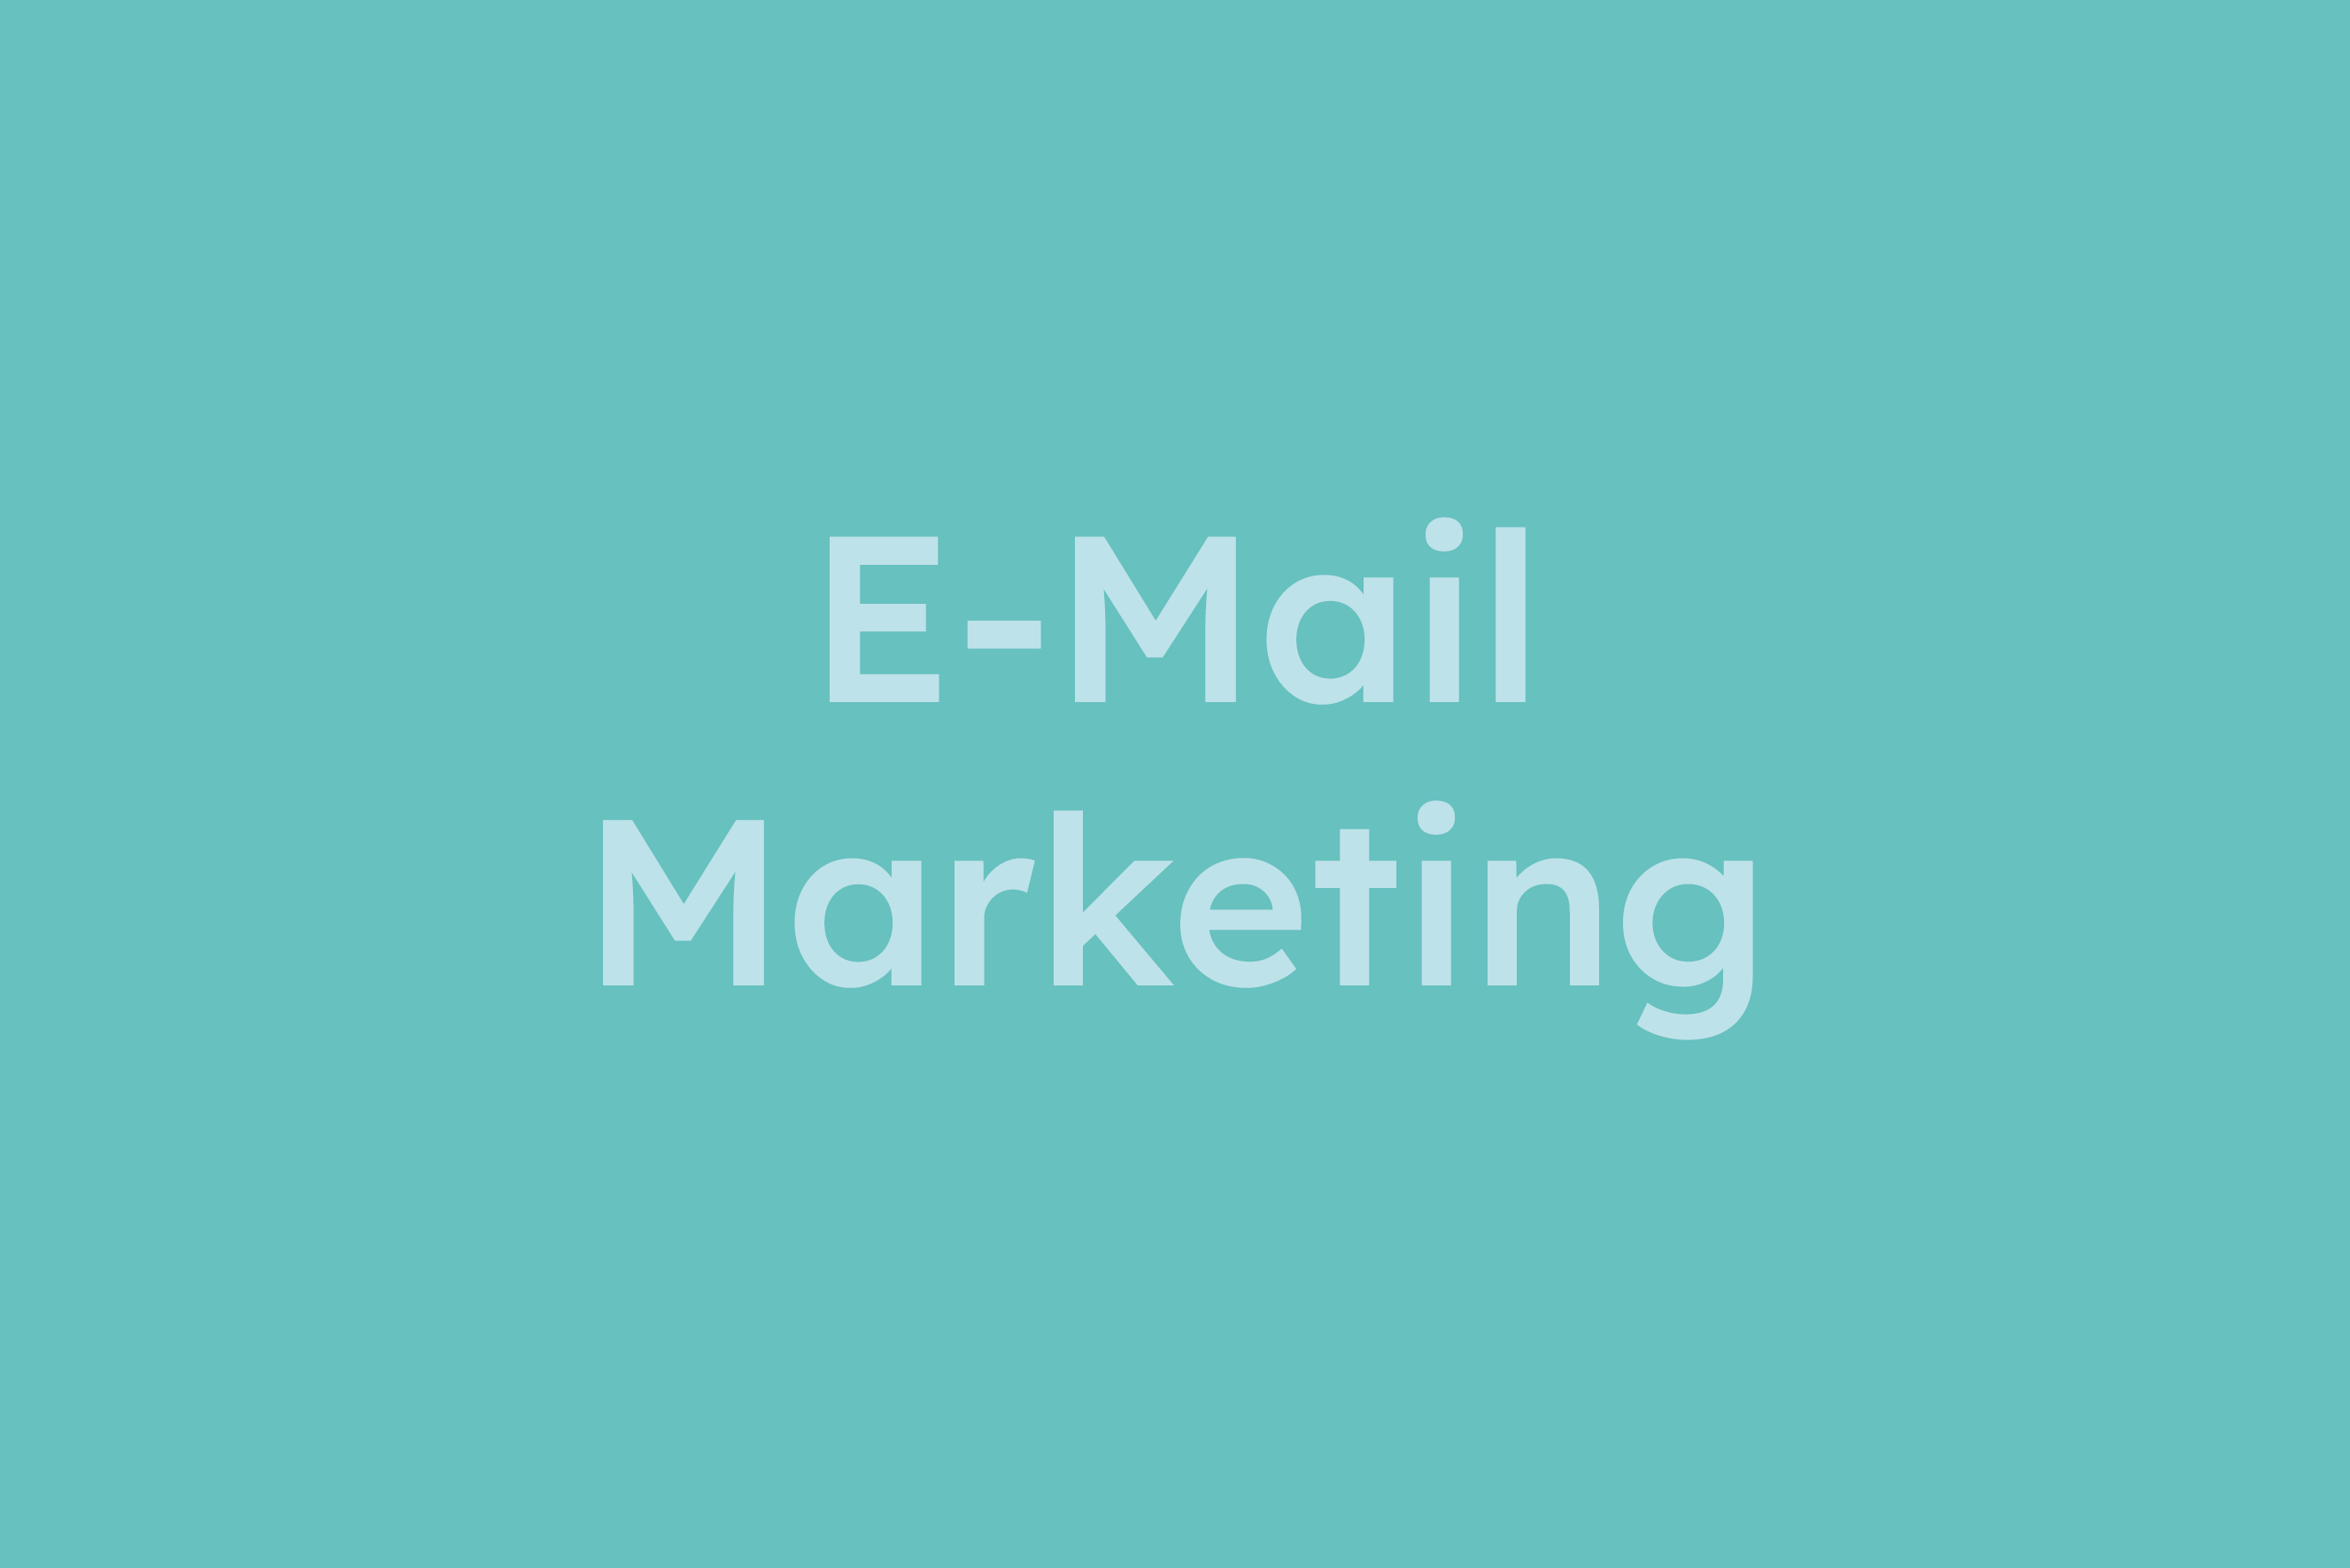 E-Mail-Marketing erklärt im Glossar von Campaign